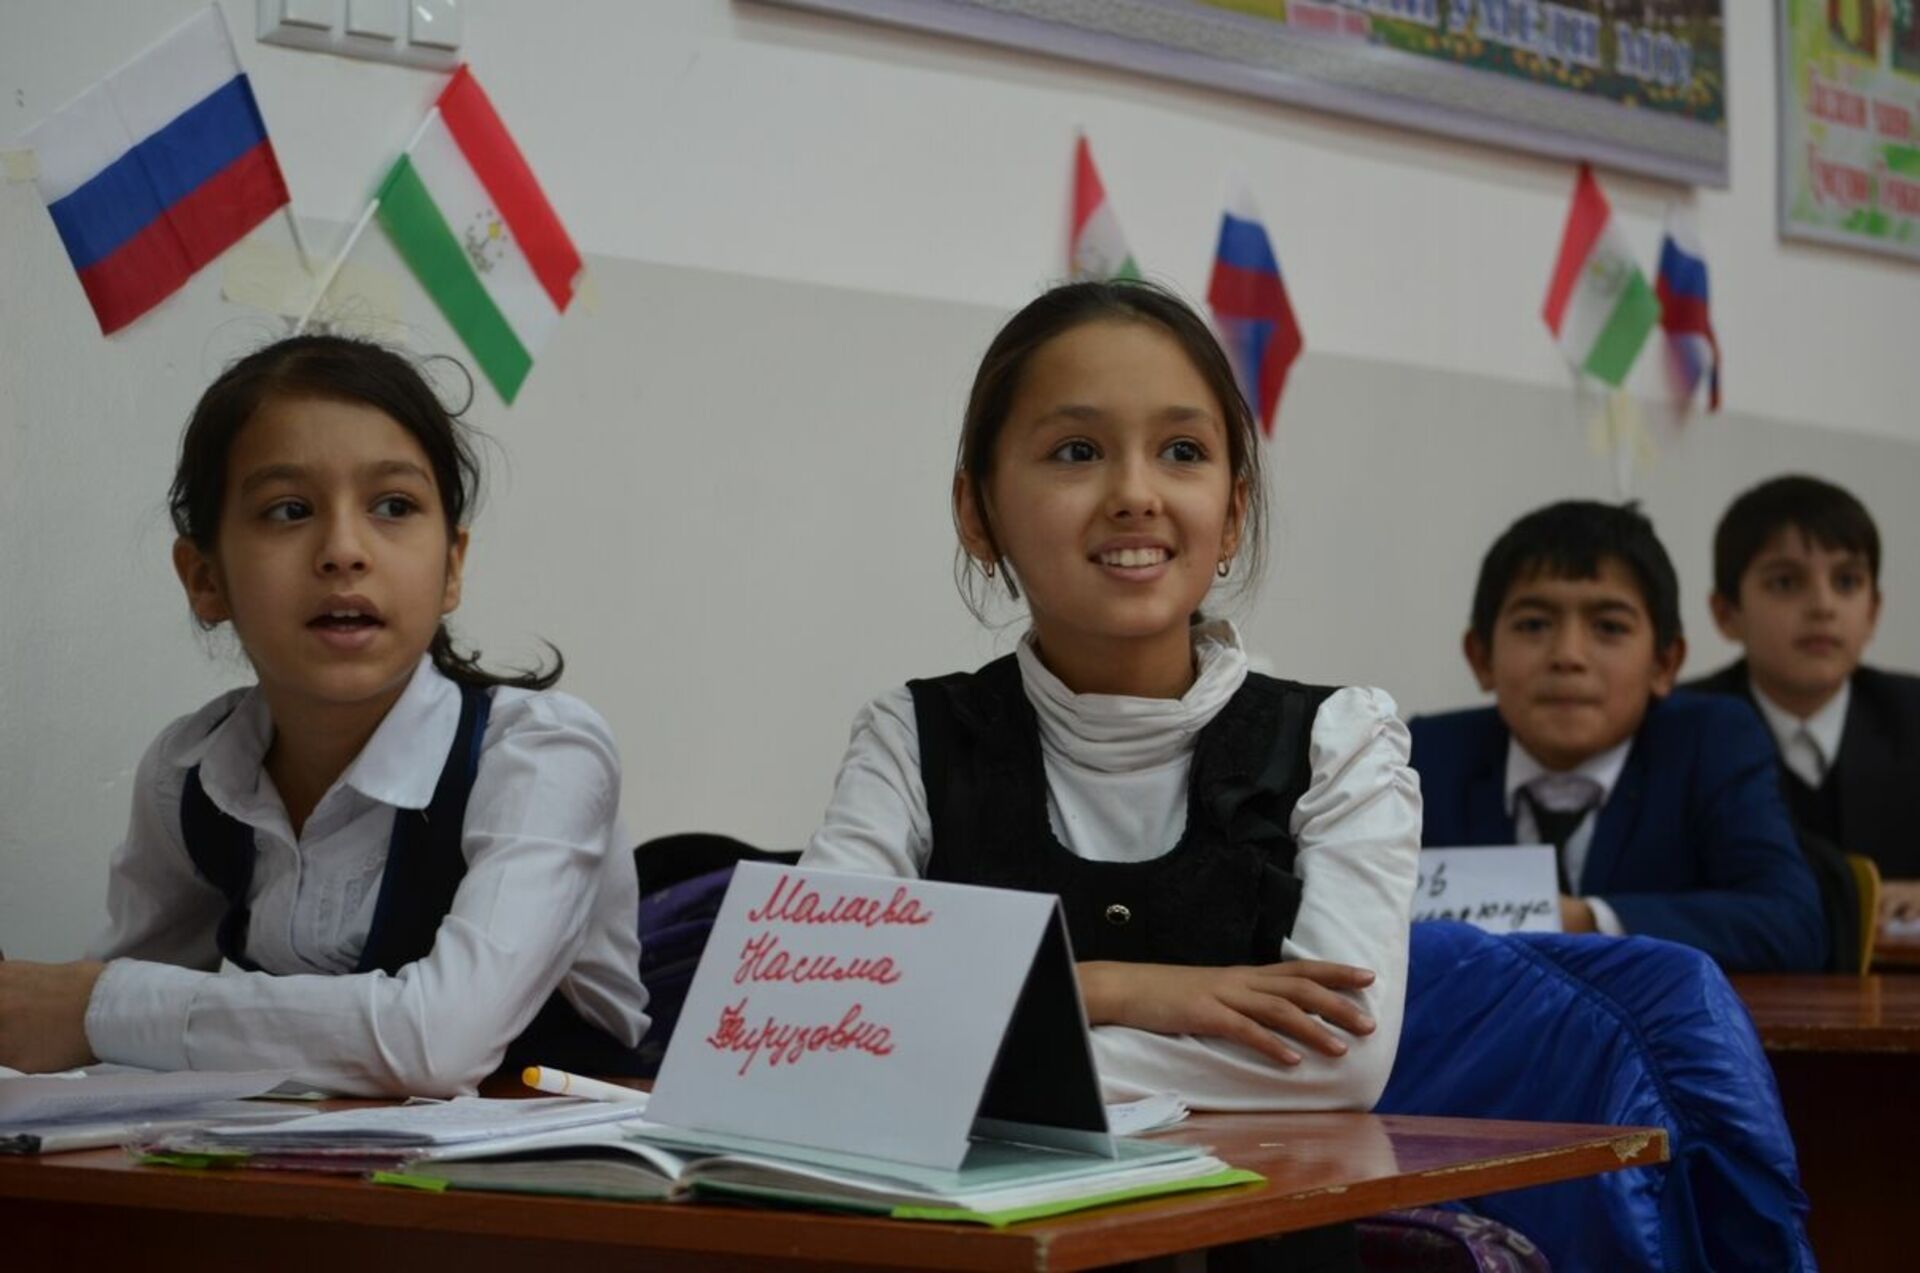 Российско таджикские школы. Такжикская школа в Таджикистане. Русскоязычные школы в Таджикистане. Русско таджикские школы в Таджикистане. Русский язык в Таджикистане в школах.